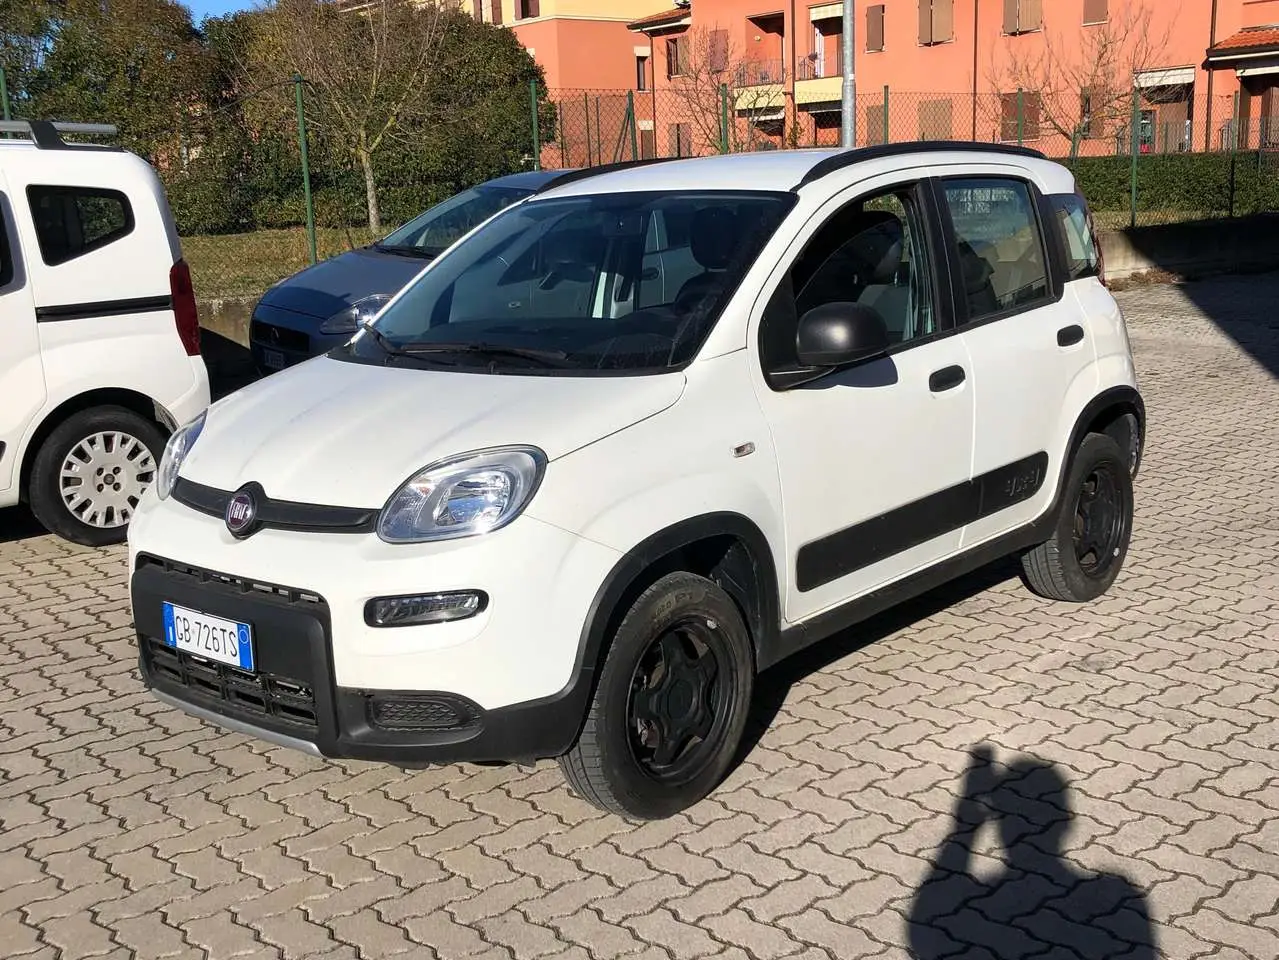 Photo 1 : Fiat Panda 2020 Petrol